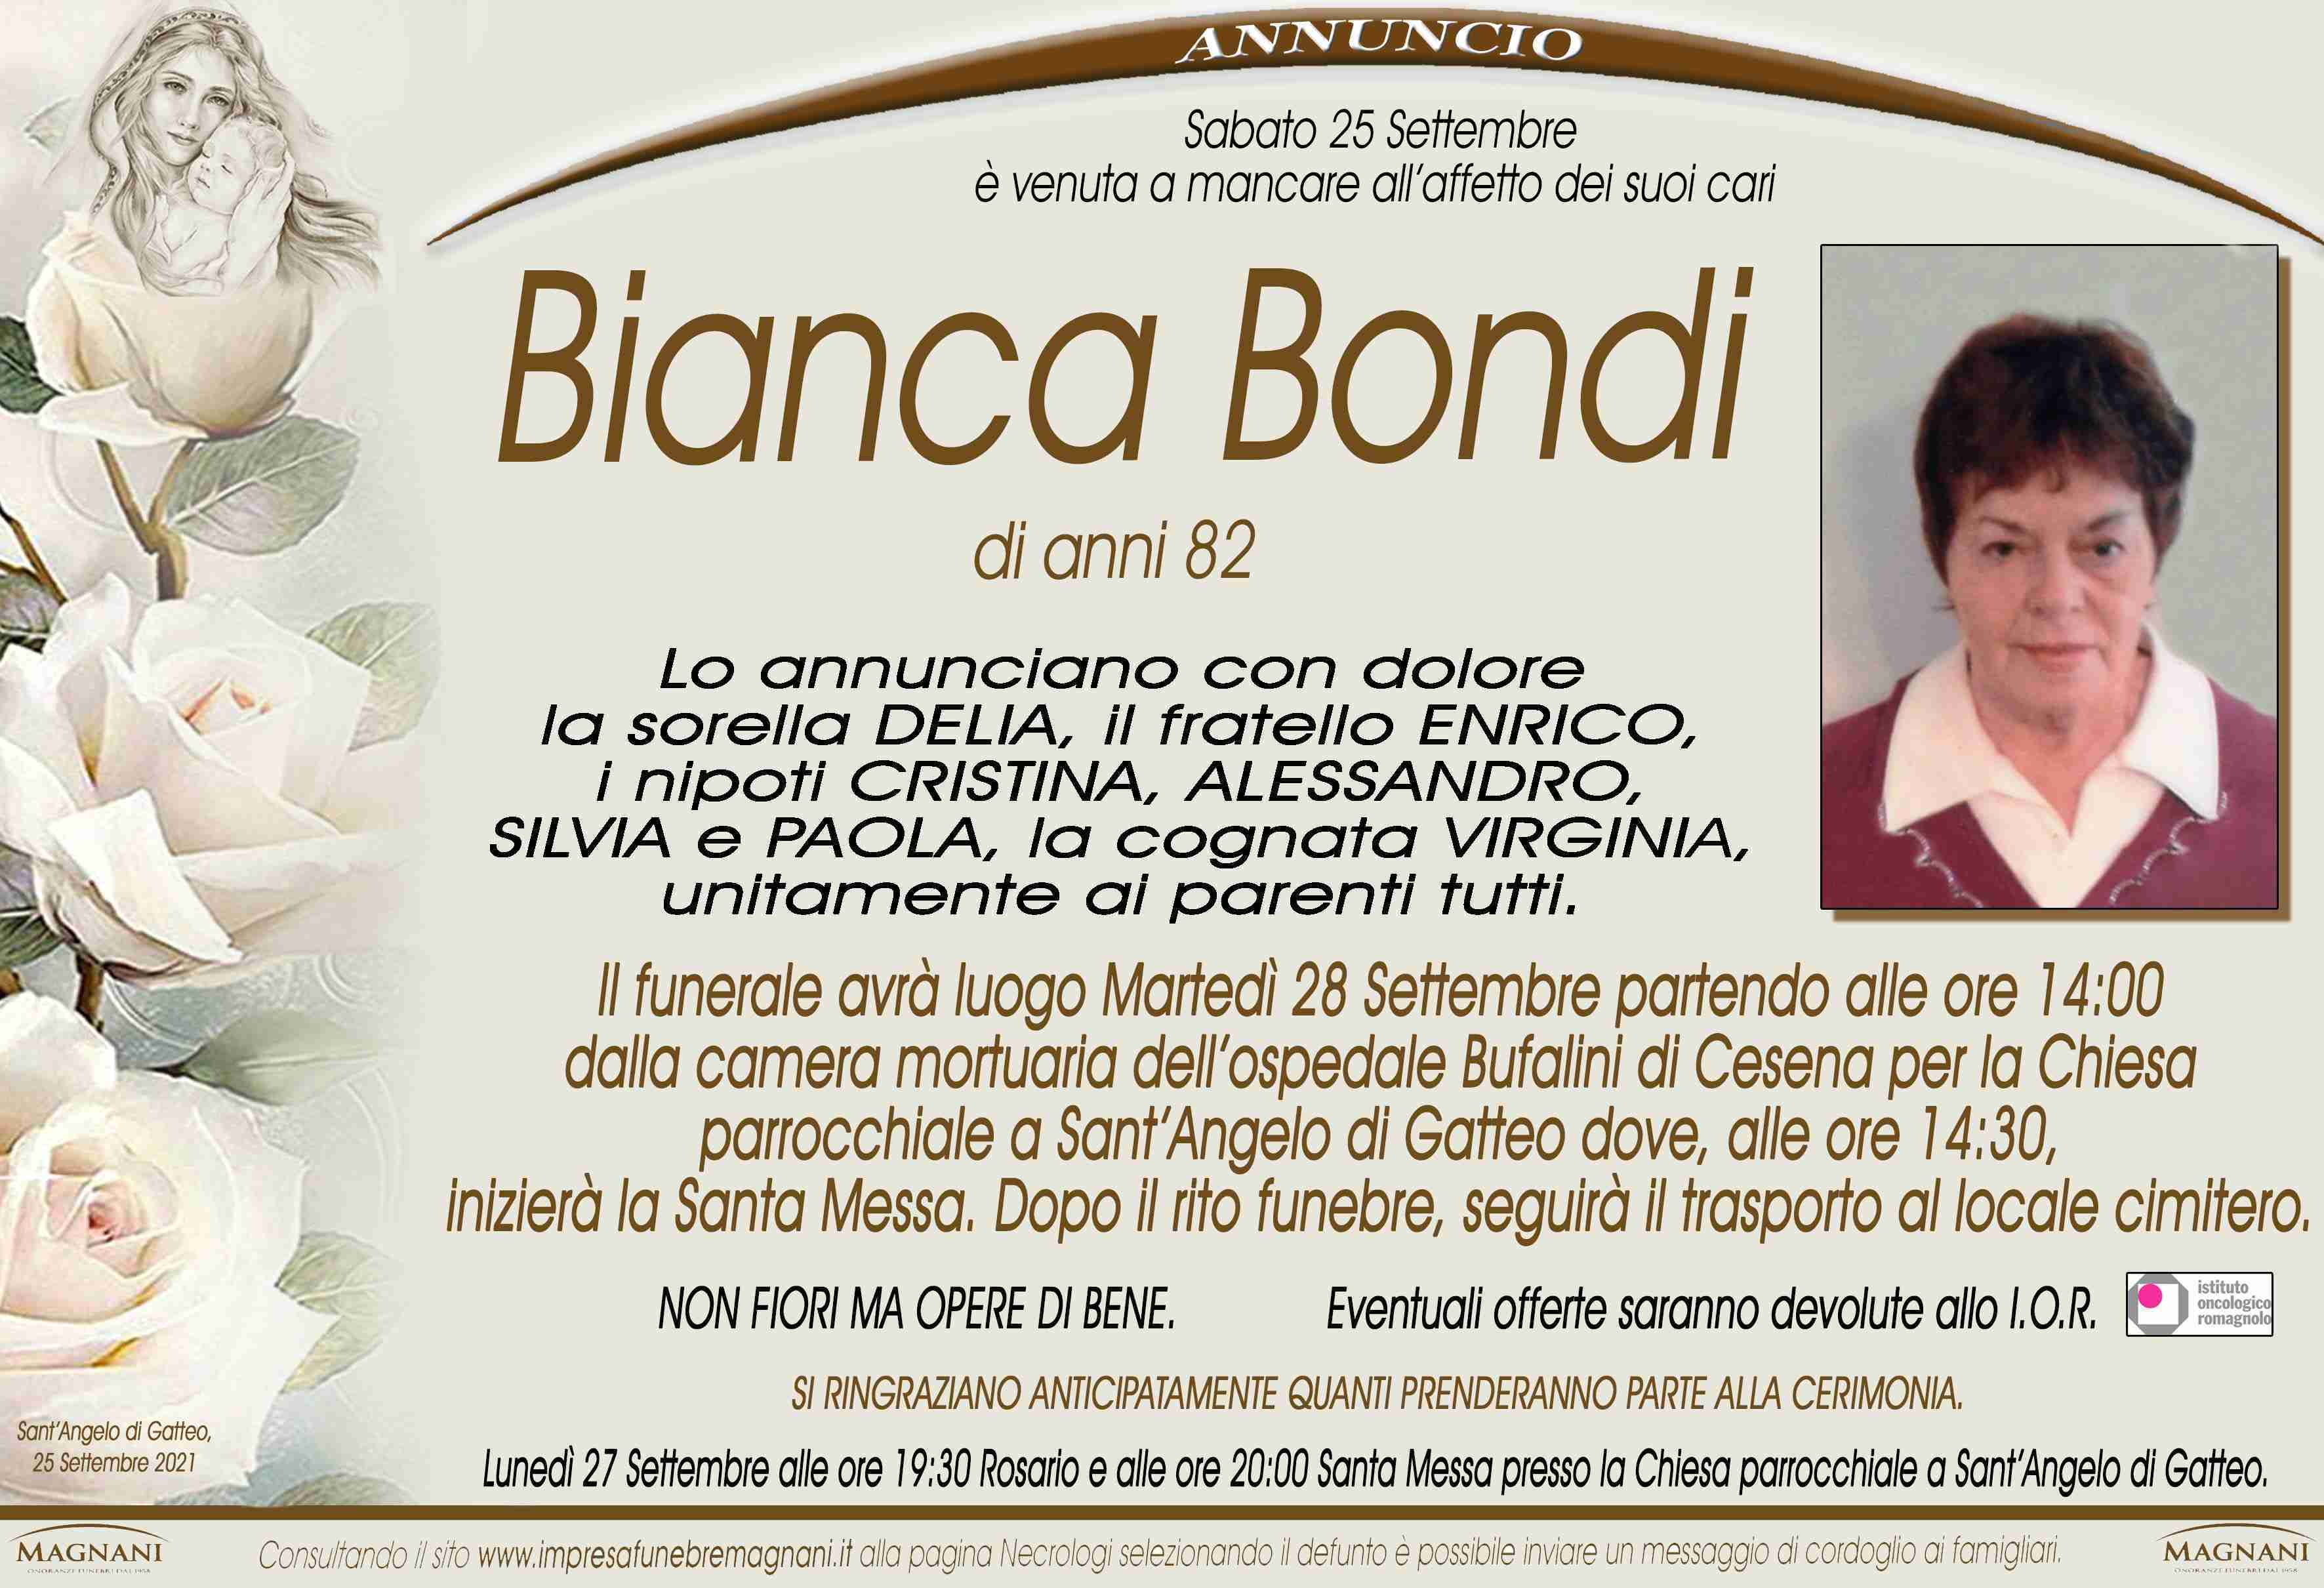 Bianca Bondi